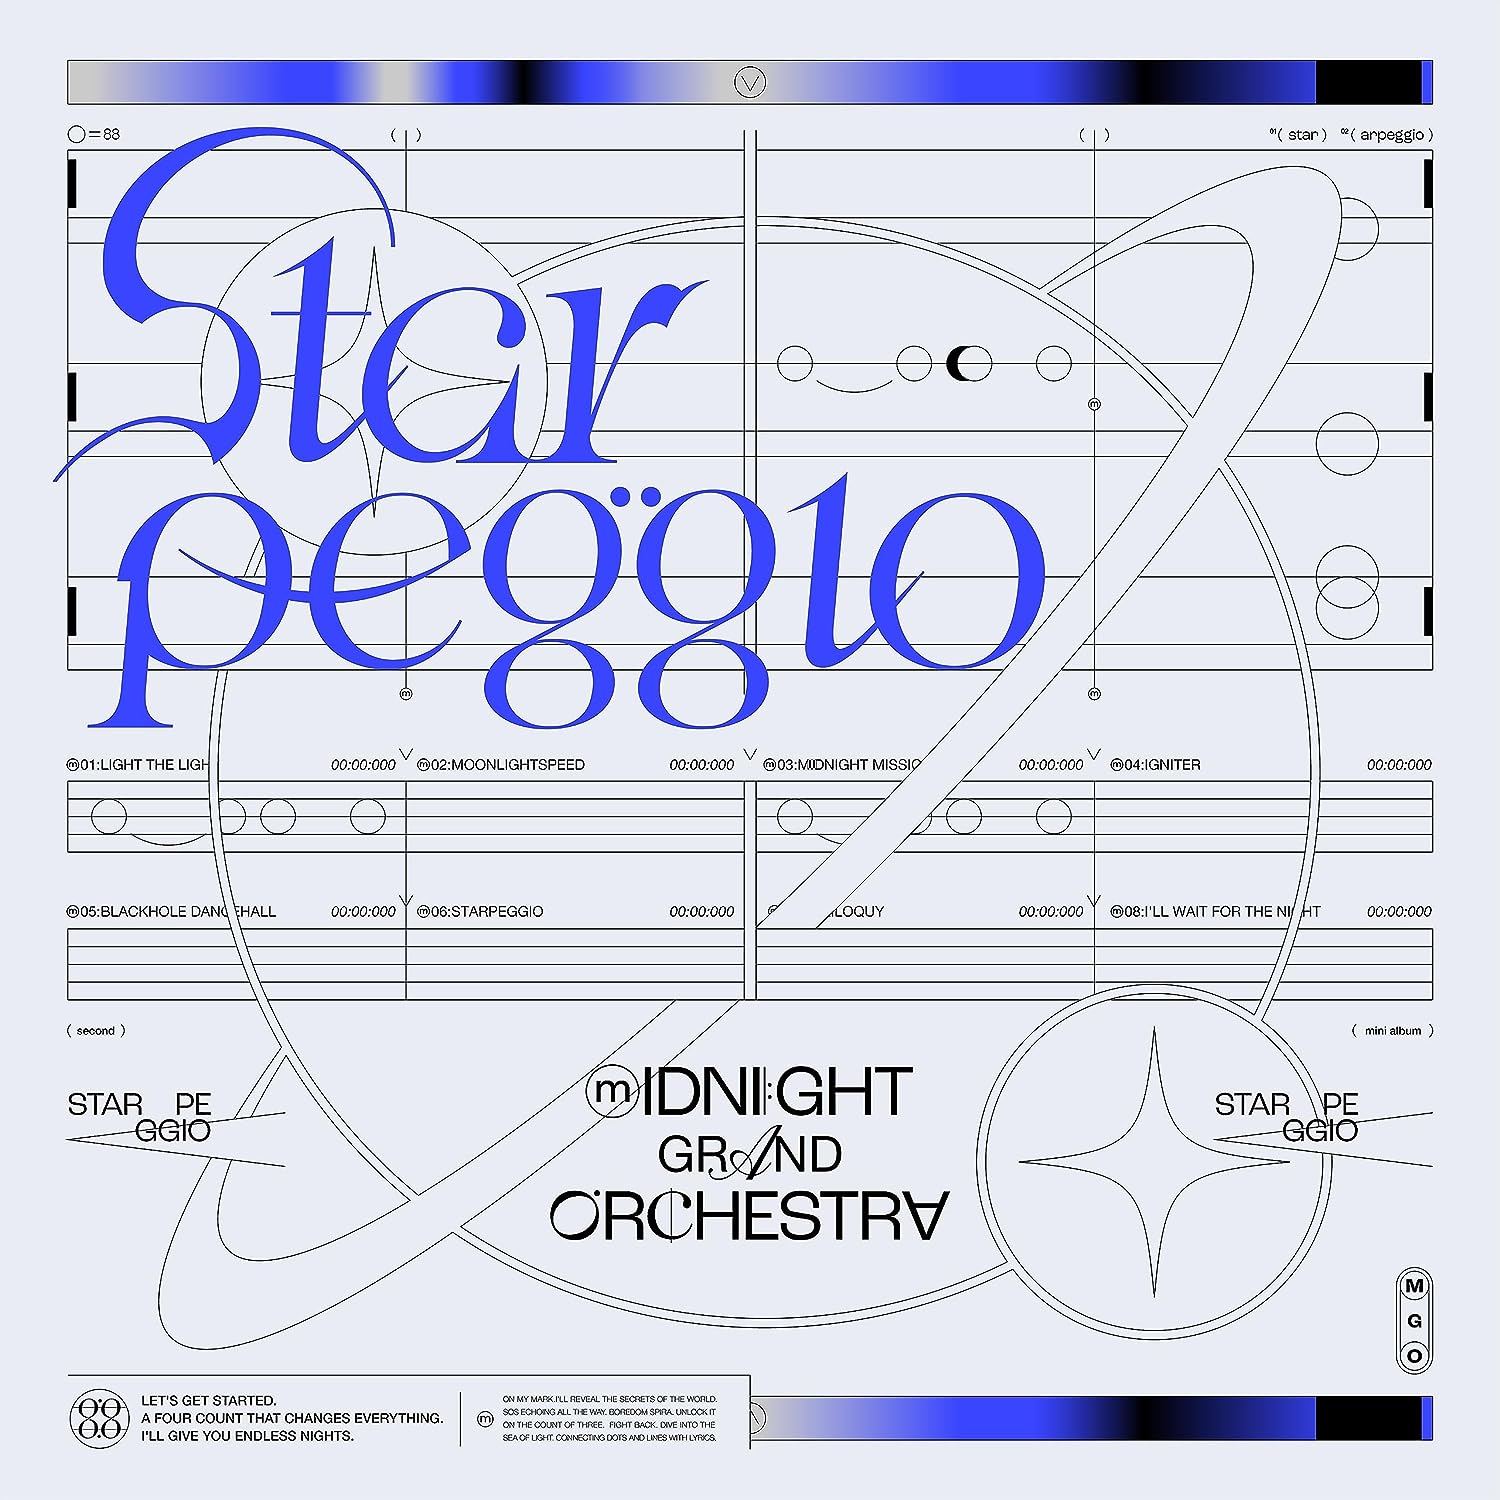 Starpeggio [Regular Edition] (Midnight Grand Orchestra)